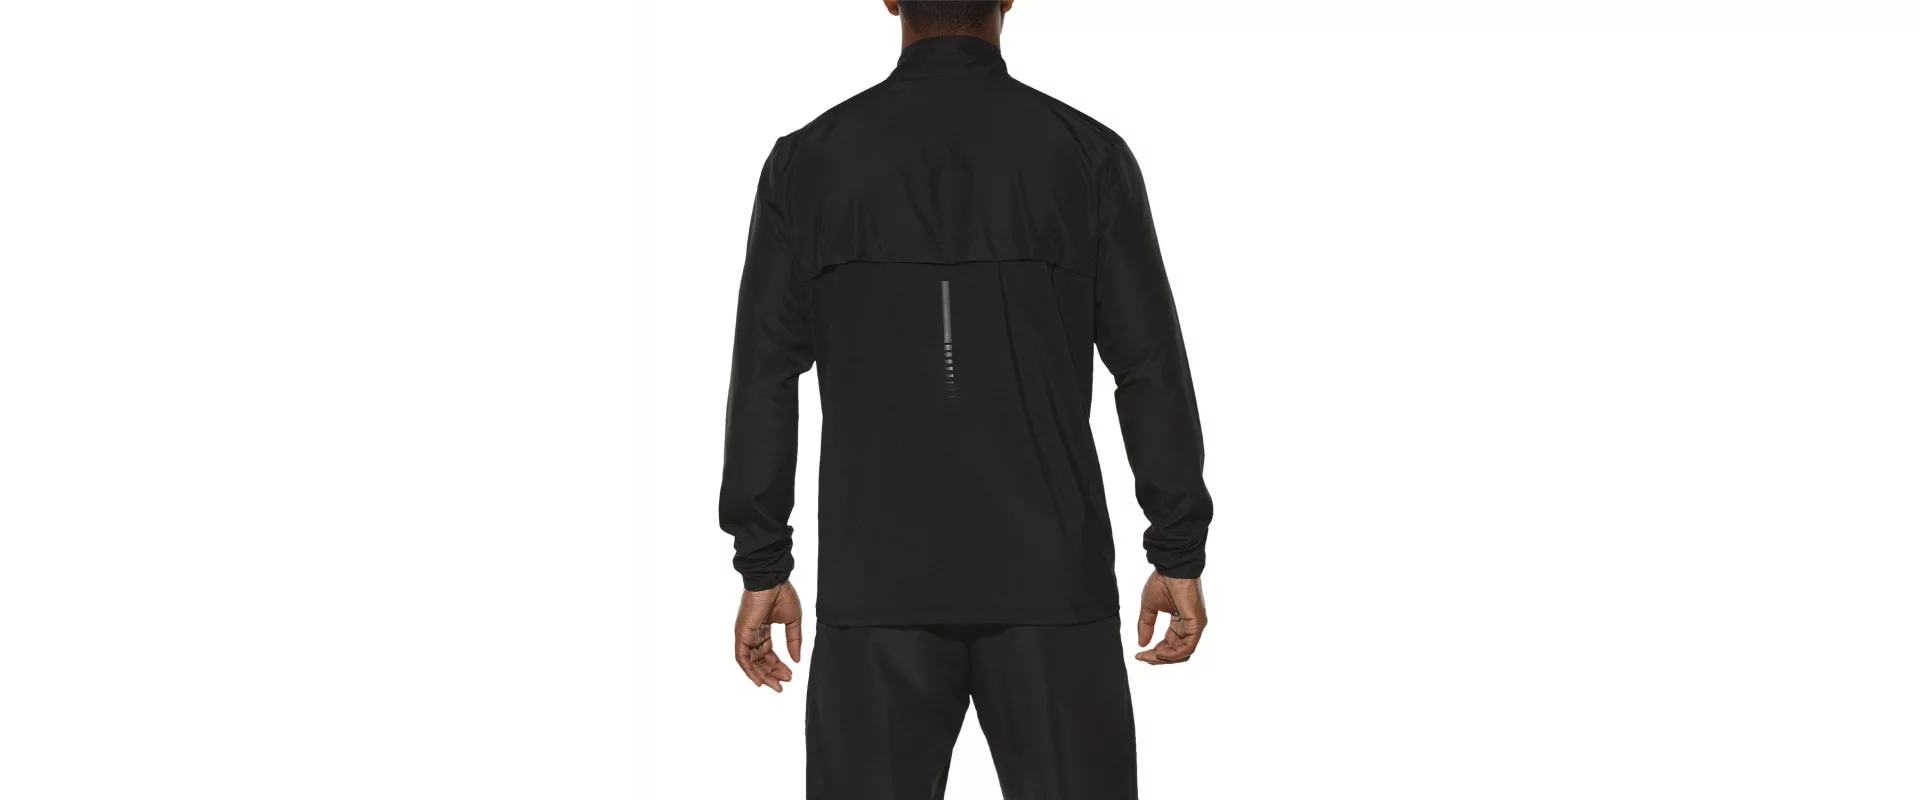 Asics Jacket / Мужская ветрозащитная куртка фото 2